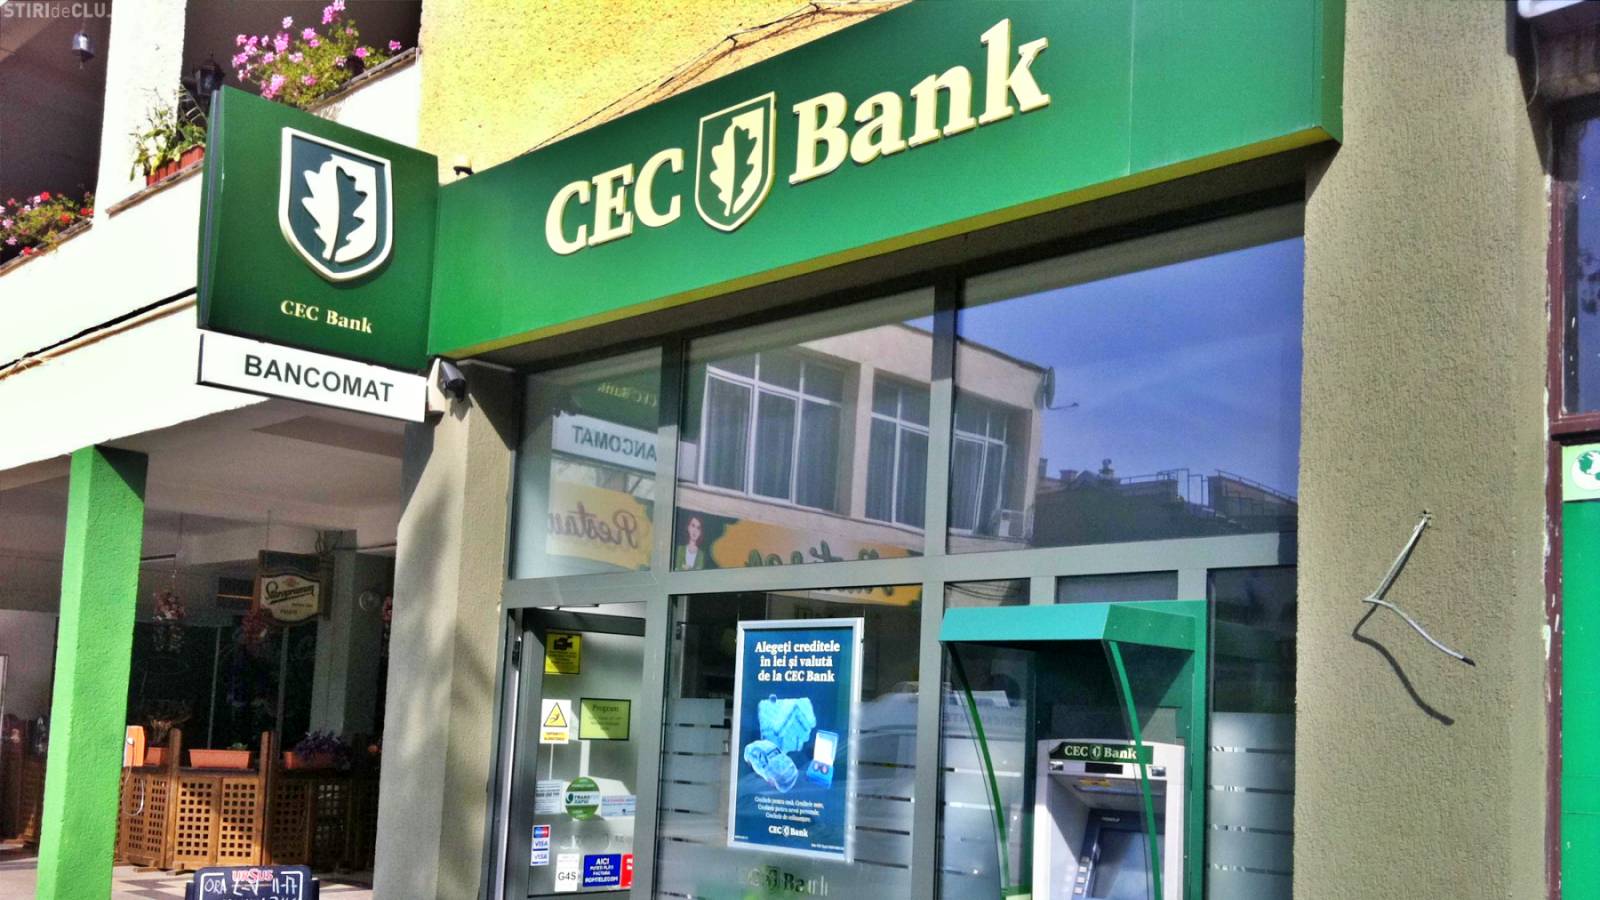 CEC-Bankgeschwindigkeit